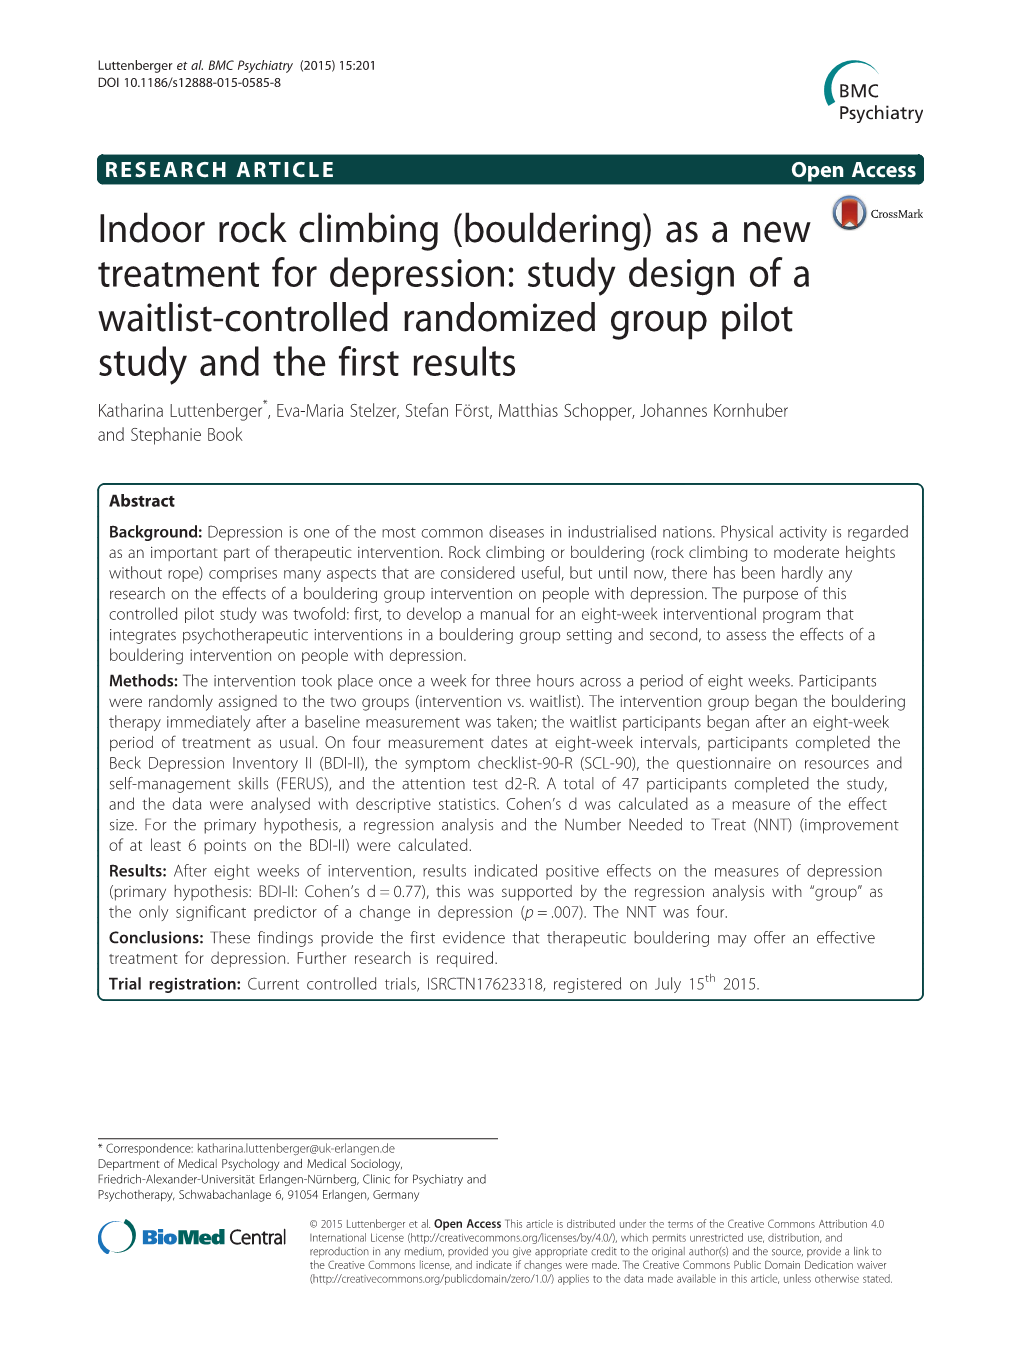 Indoor Rock Climbing (Bouldering)